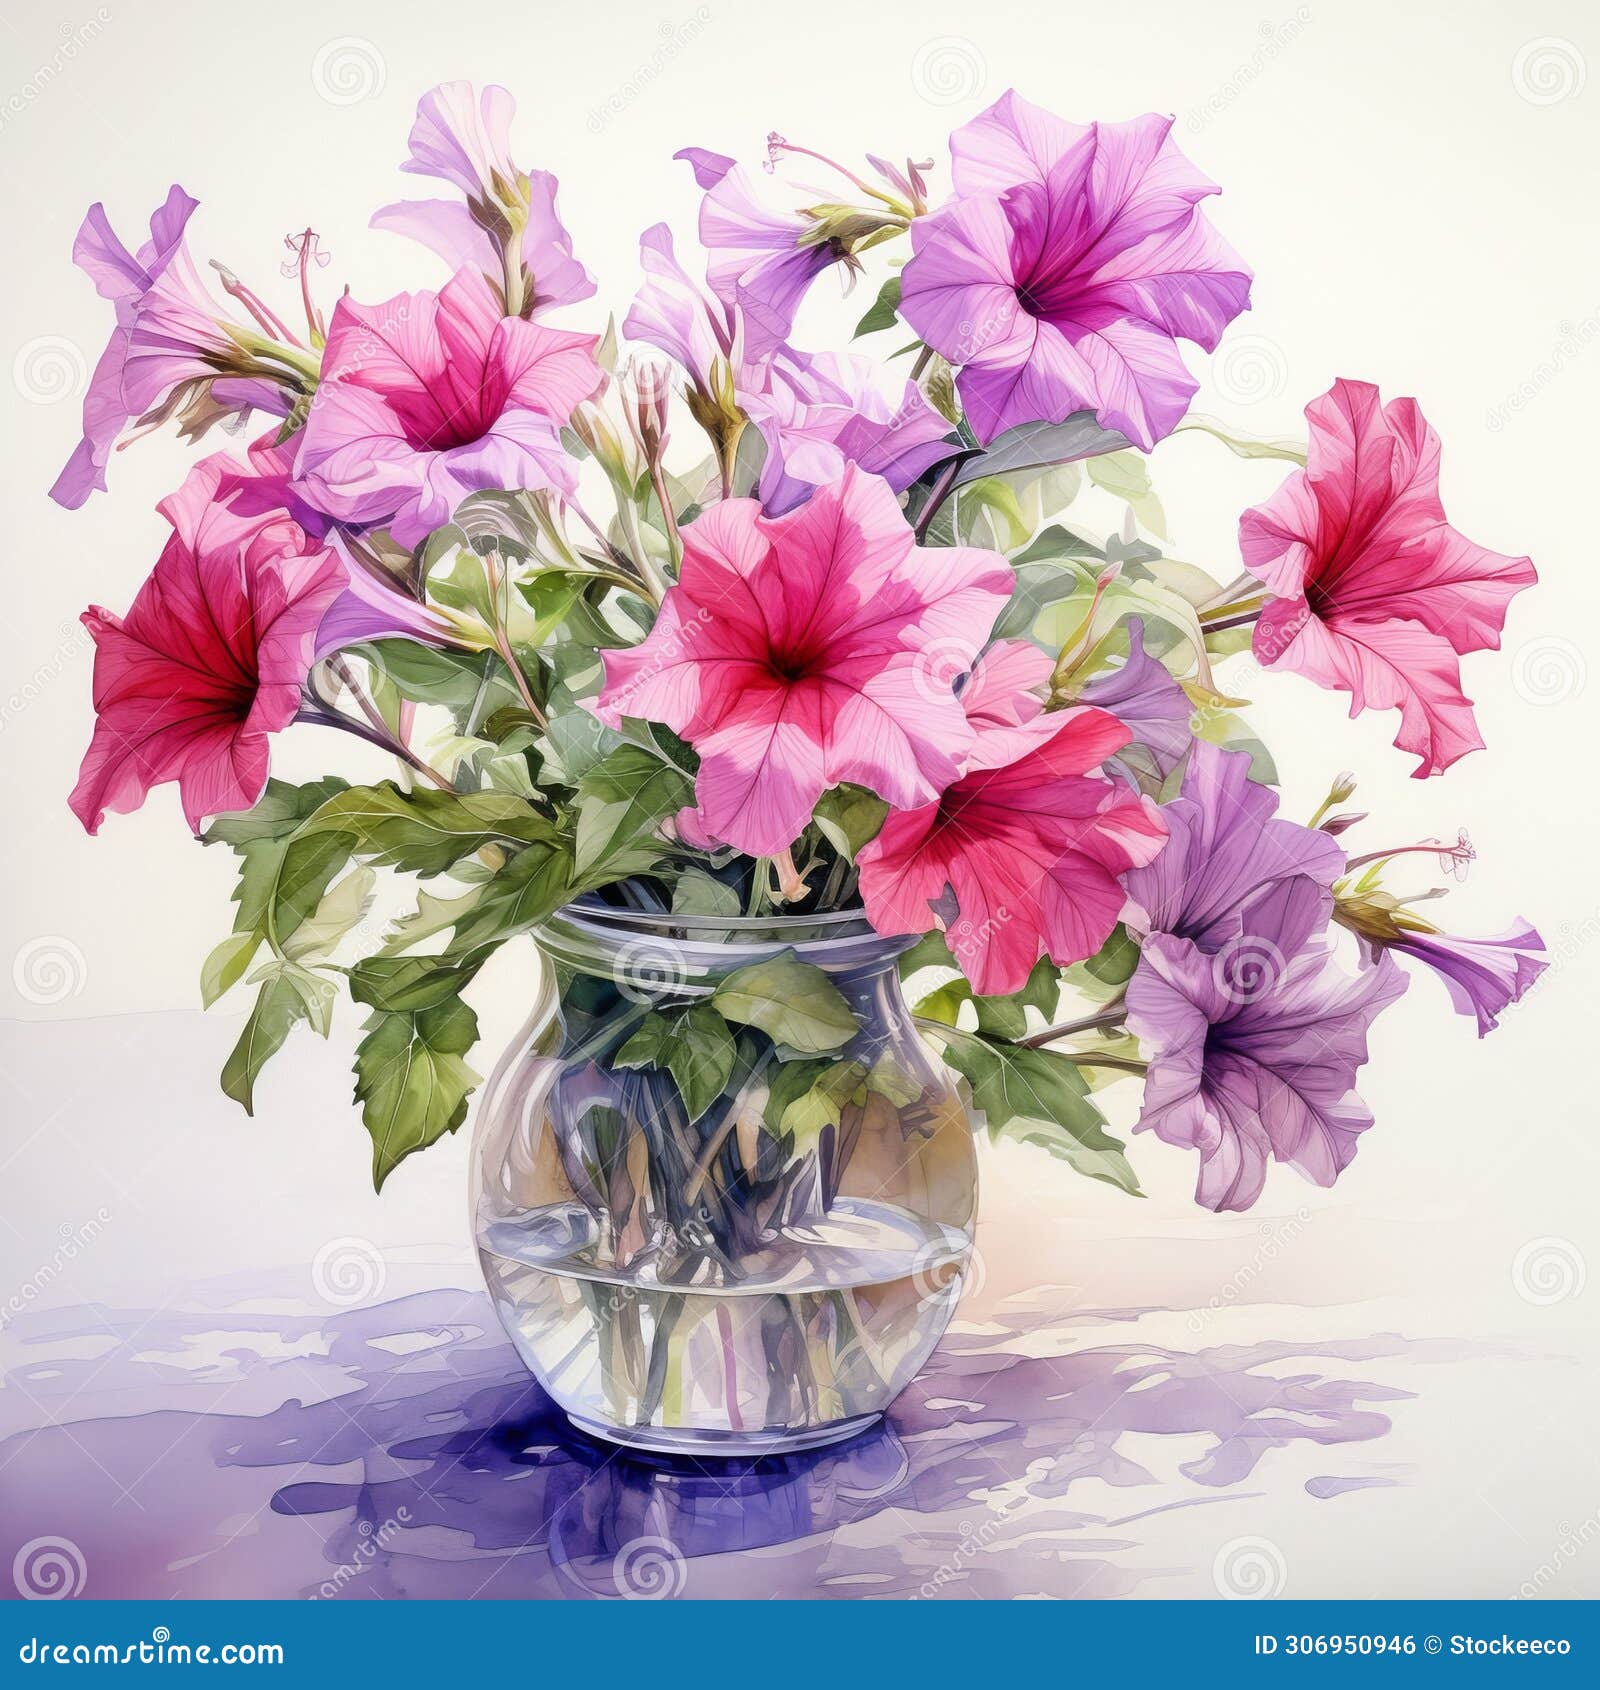 watercolor  of petunia in a vase